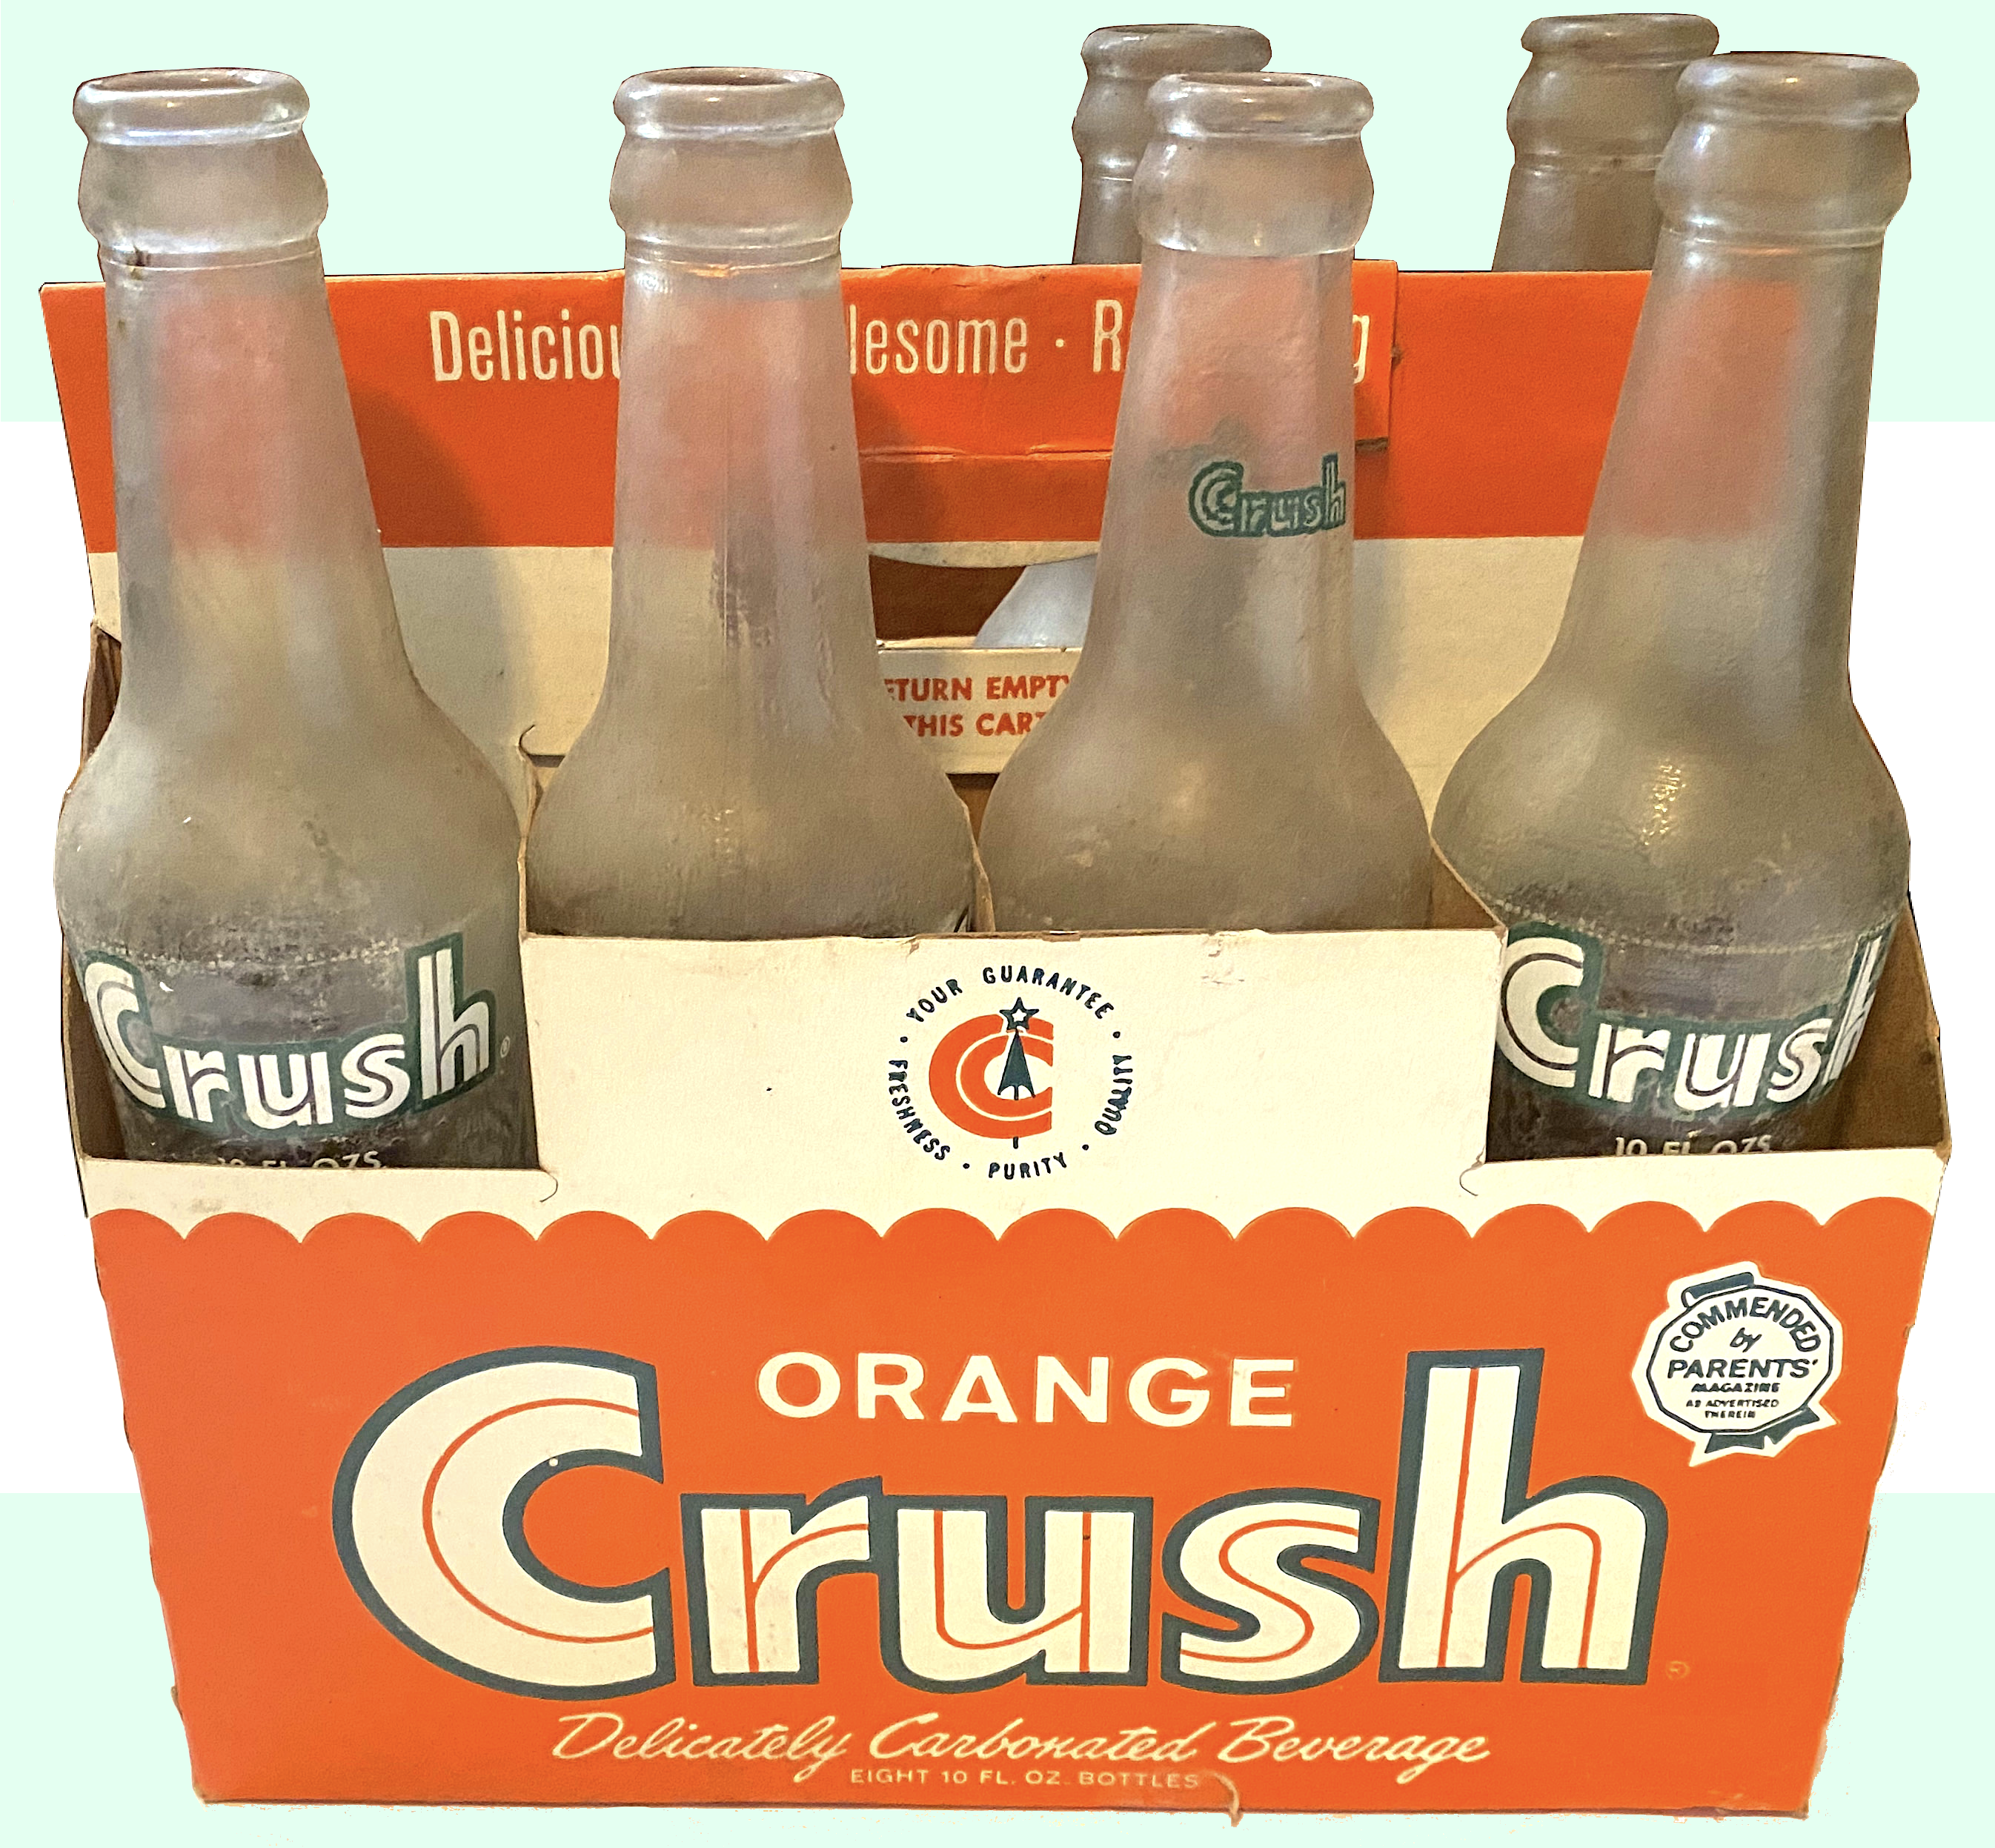 Orange Crush history